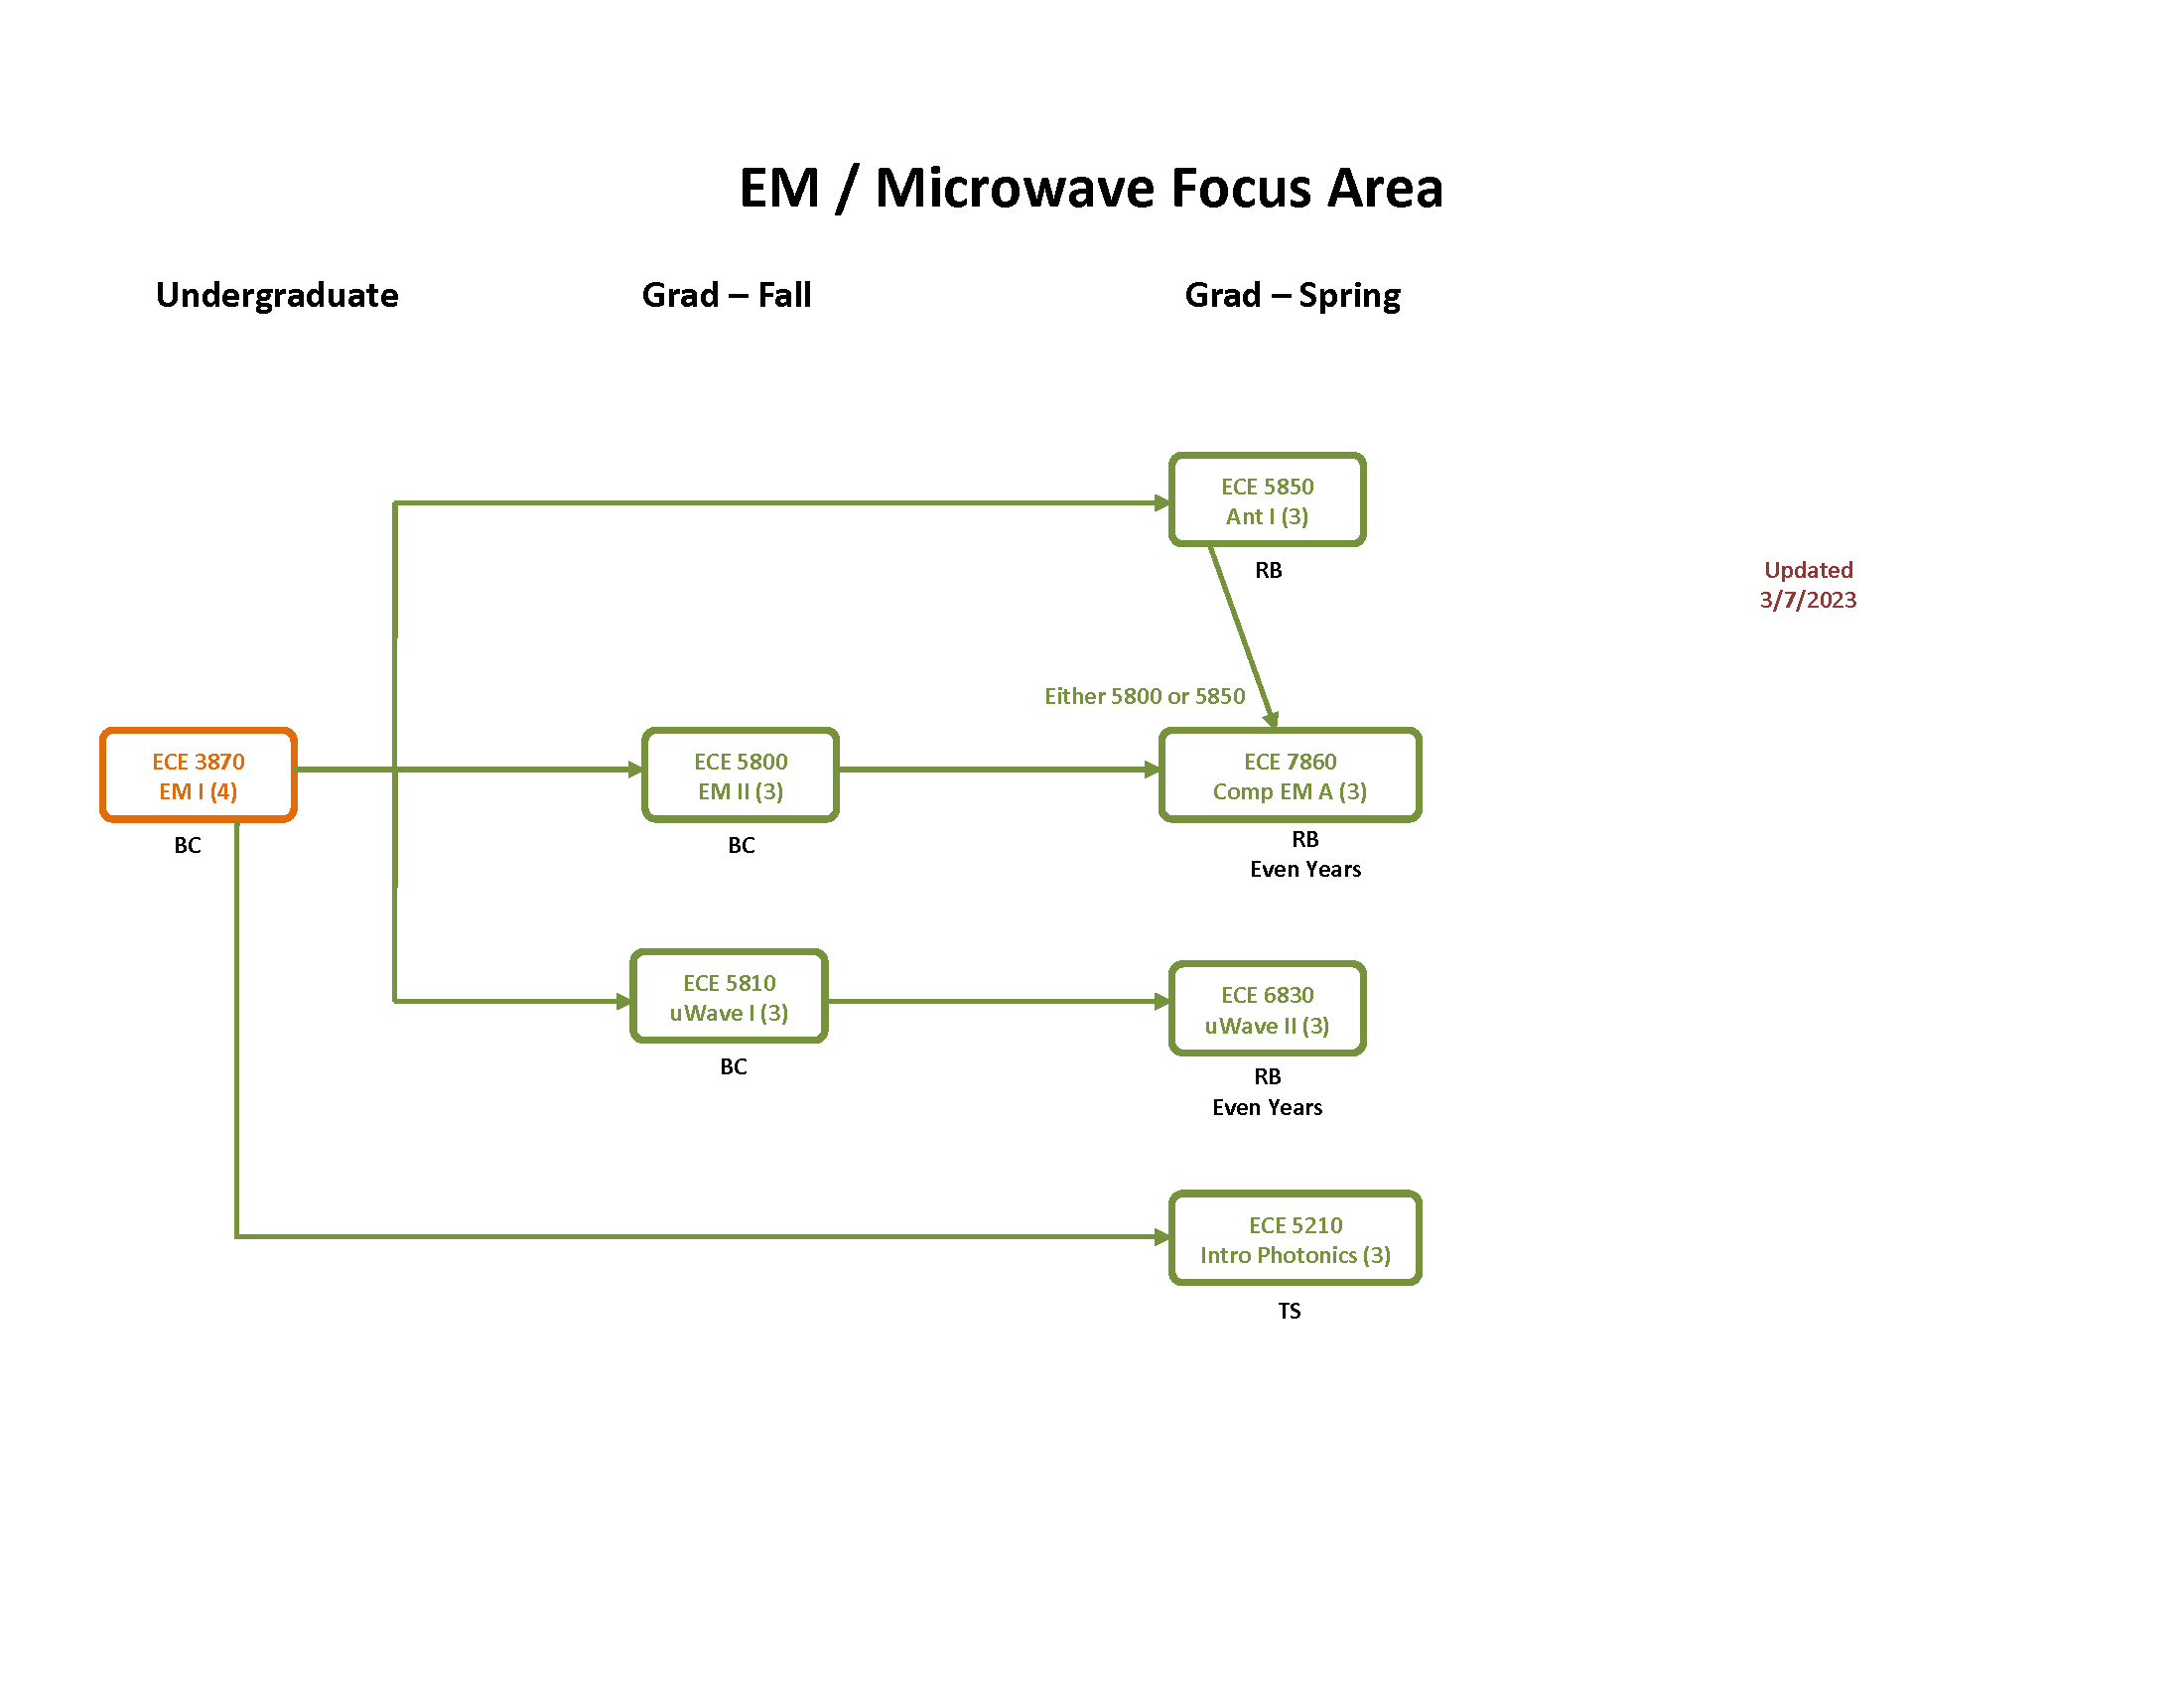 EM / Microwave Focus Area flow chart